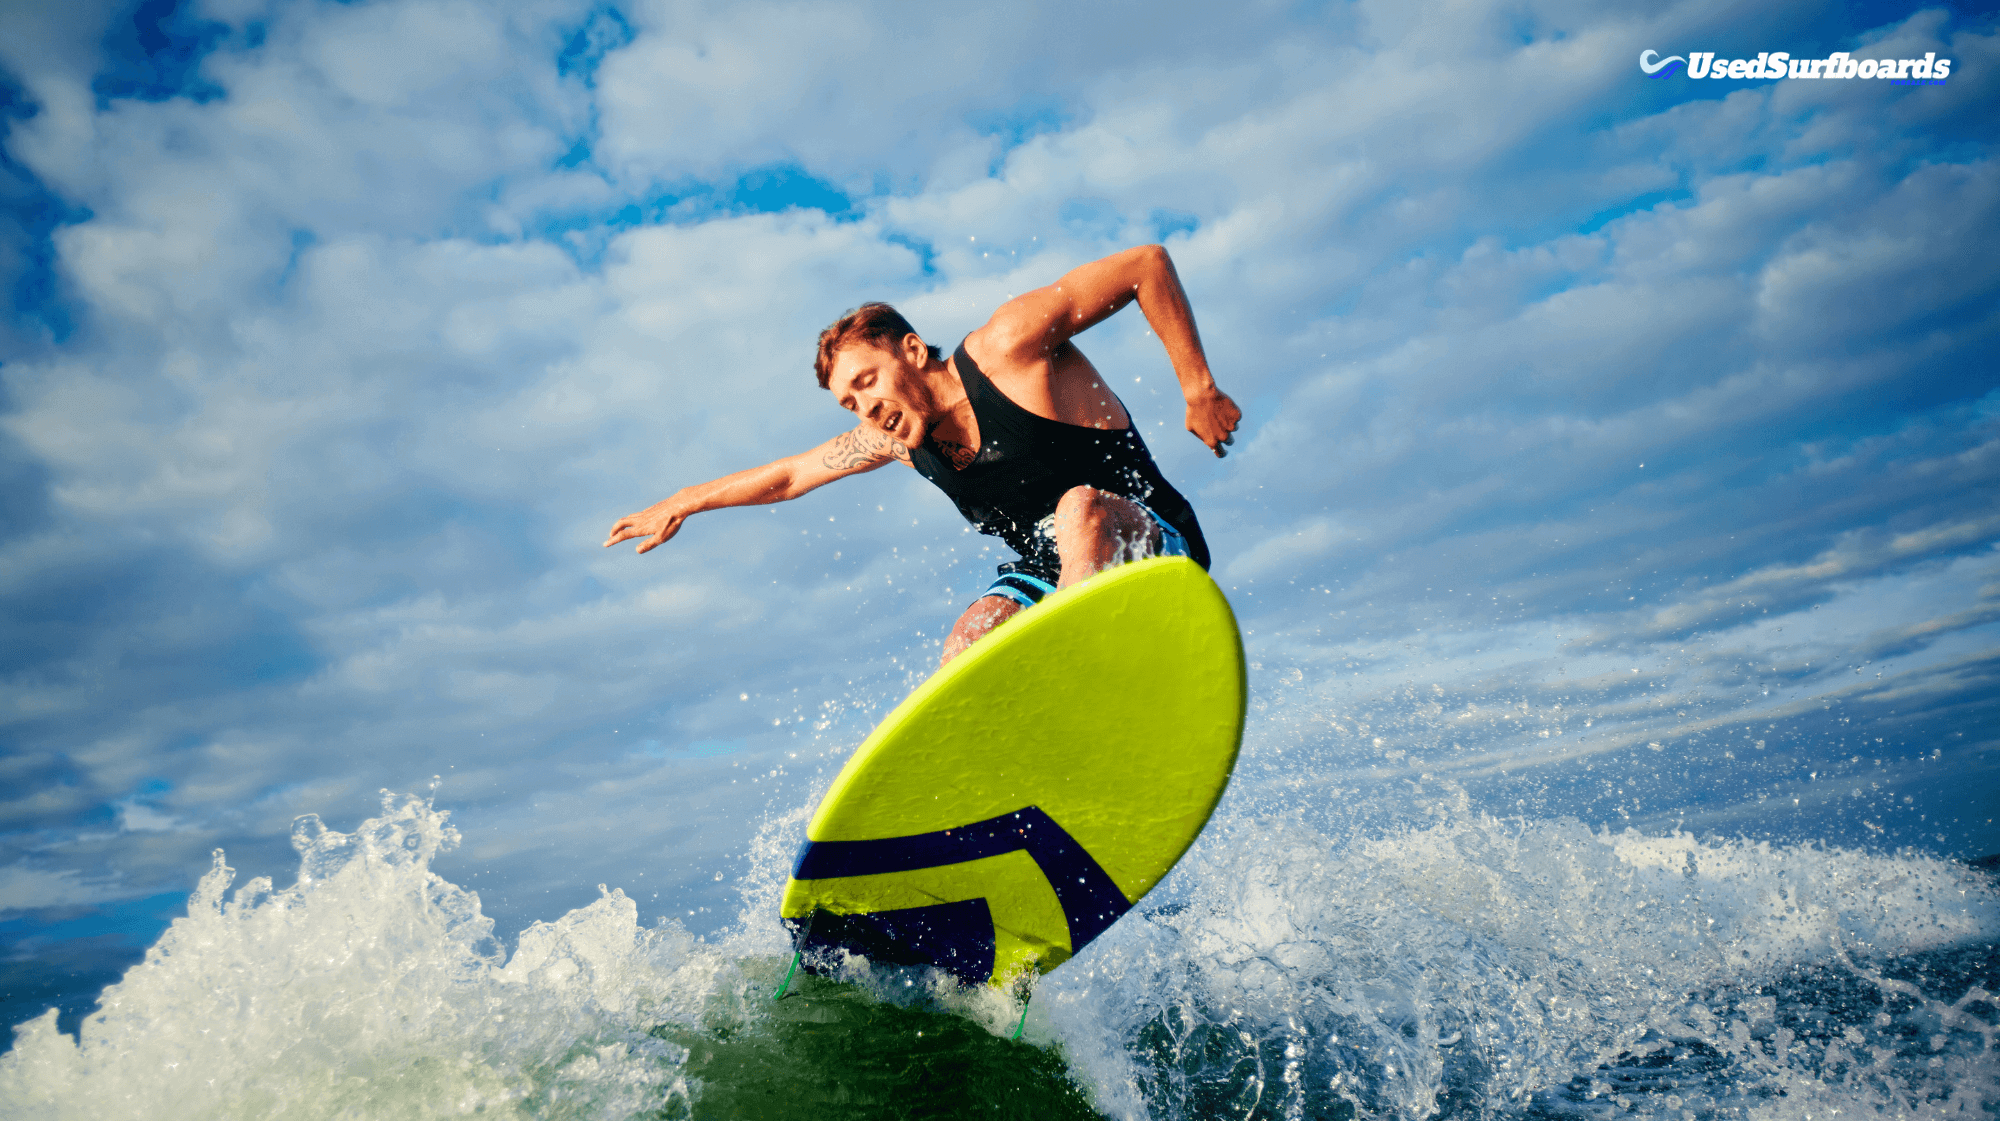 Surfboard Rentals Near Me: Find the Best Rentals